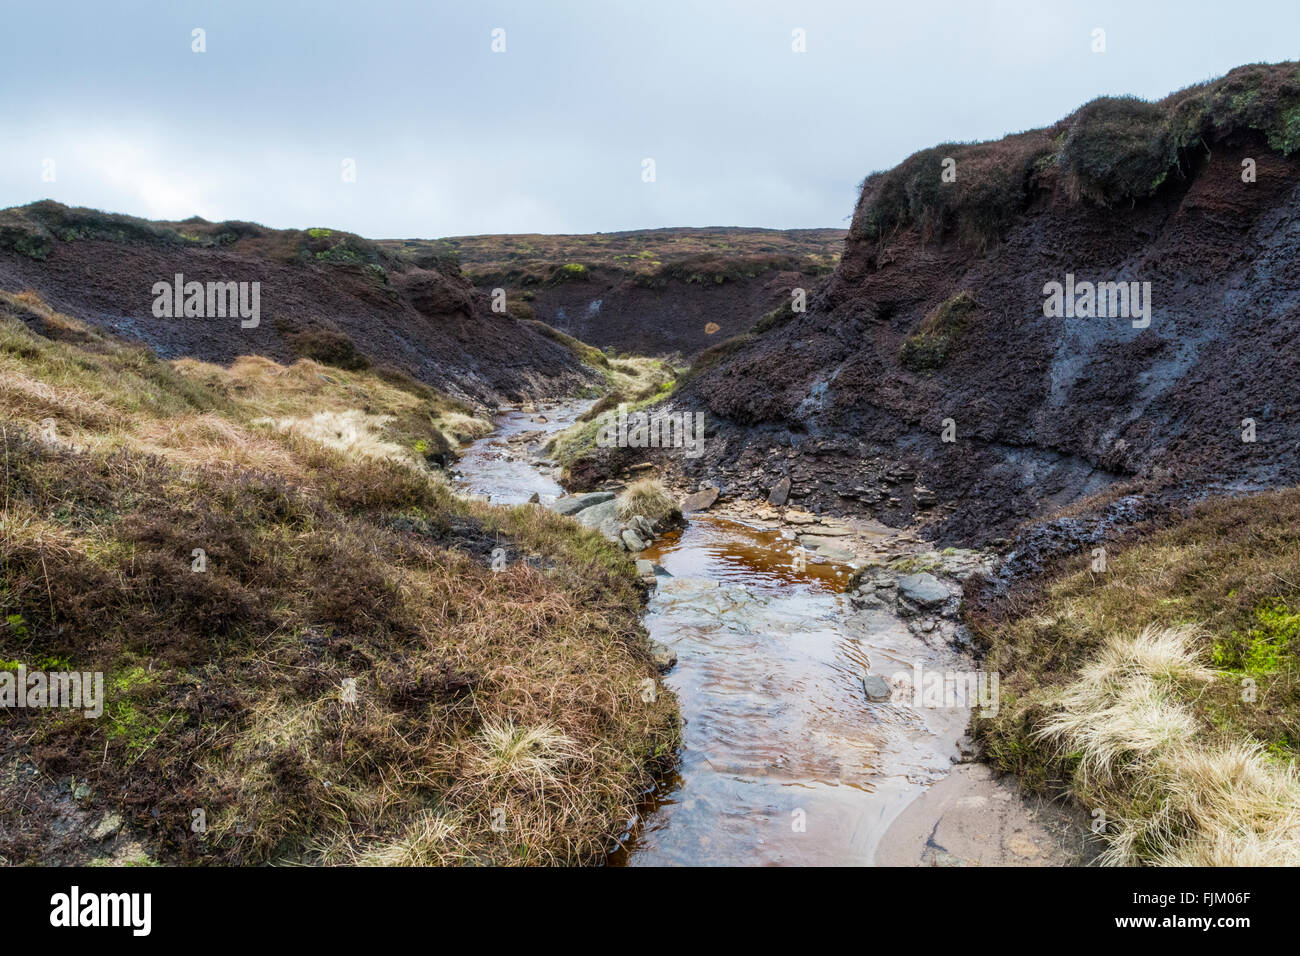 Un ruisseau qui coule à travers la lande causant l'érosion de la tourbe, et la création d'un ravin et hags. Kinder Scout, Derbyshire Peak District, England, UK Banque D'Images